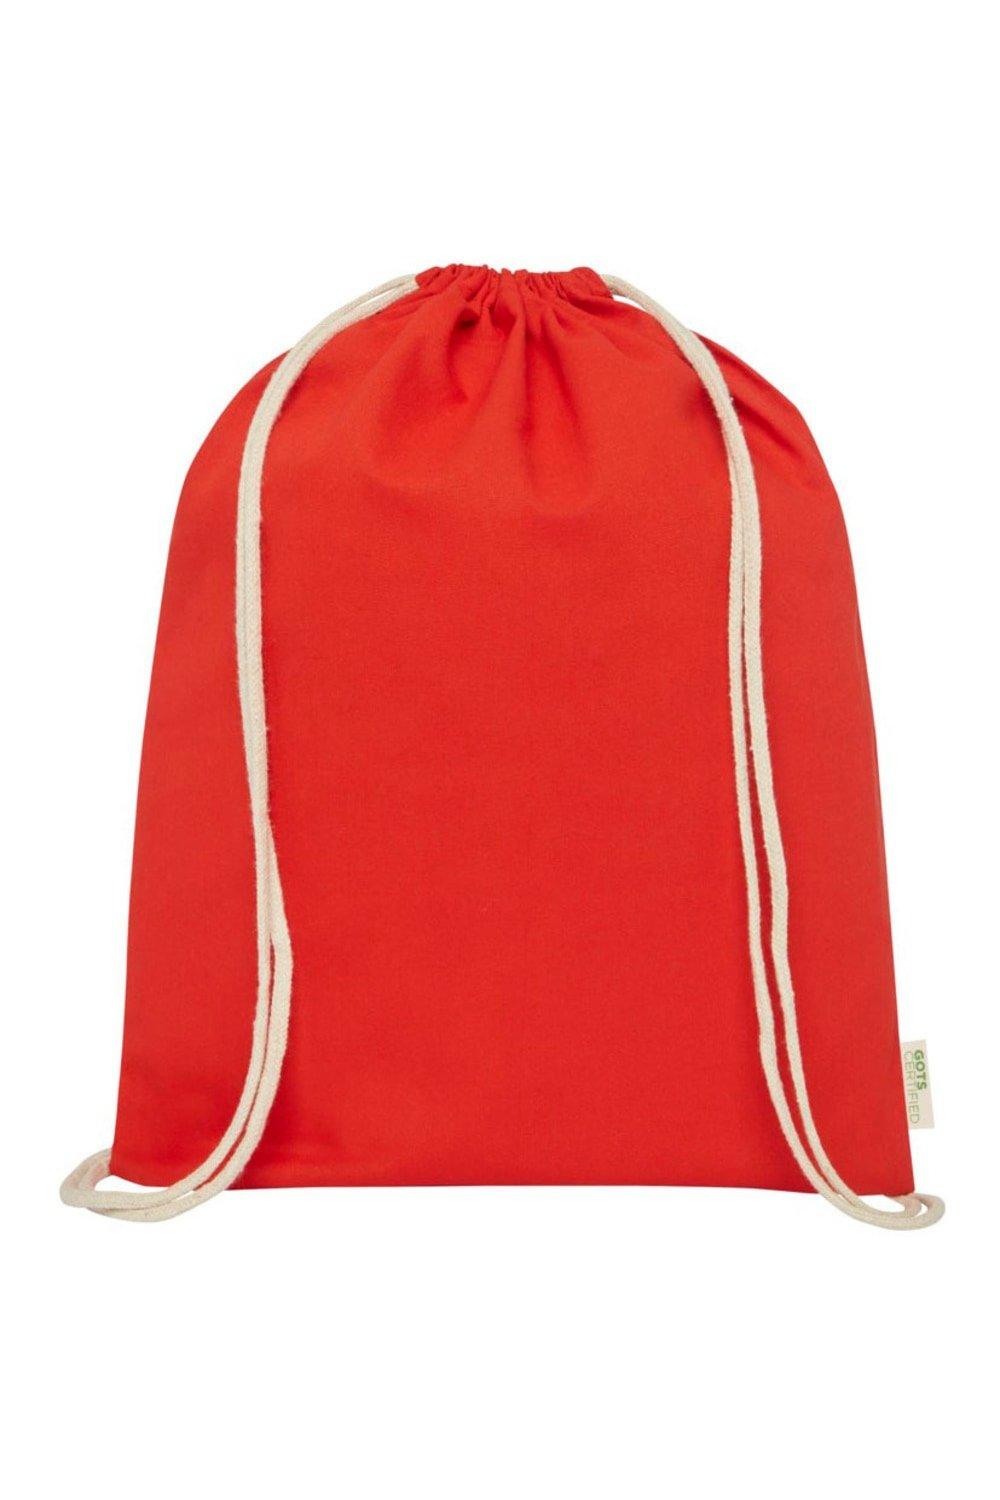 Сумка Orissa на шнурке Bullet, красный изолированная сумка на шнурке adventure из переработанного сырья bullet красный